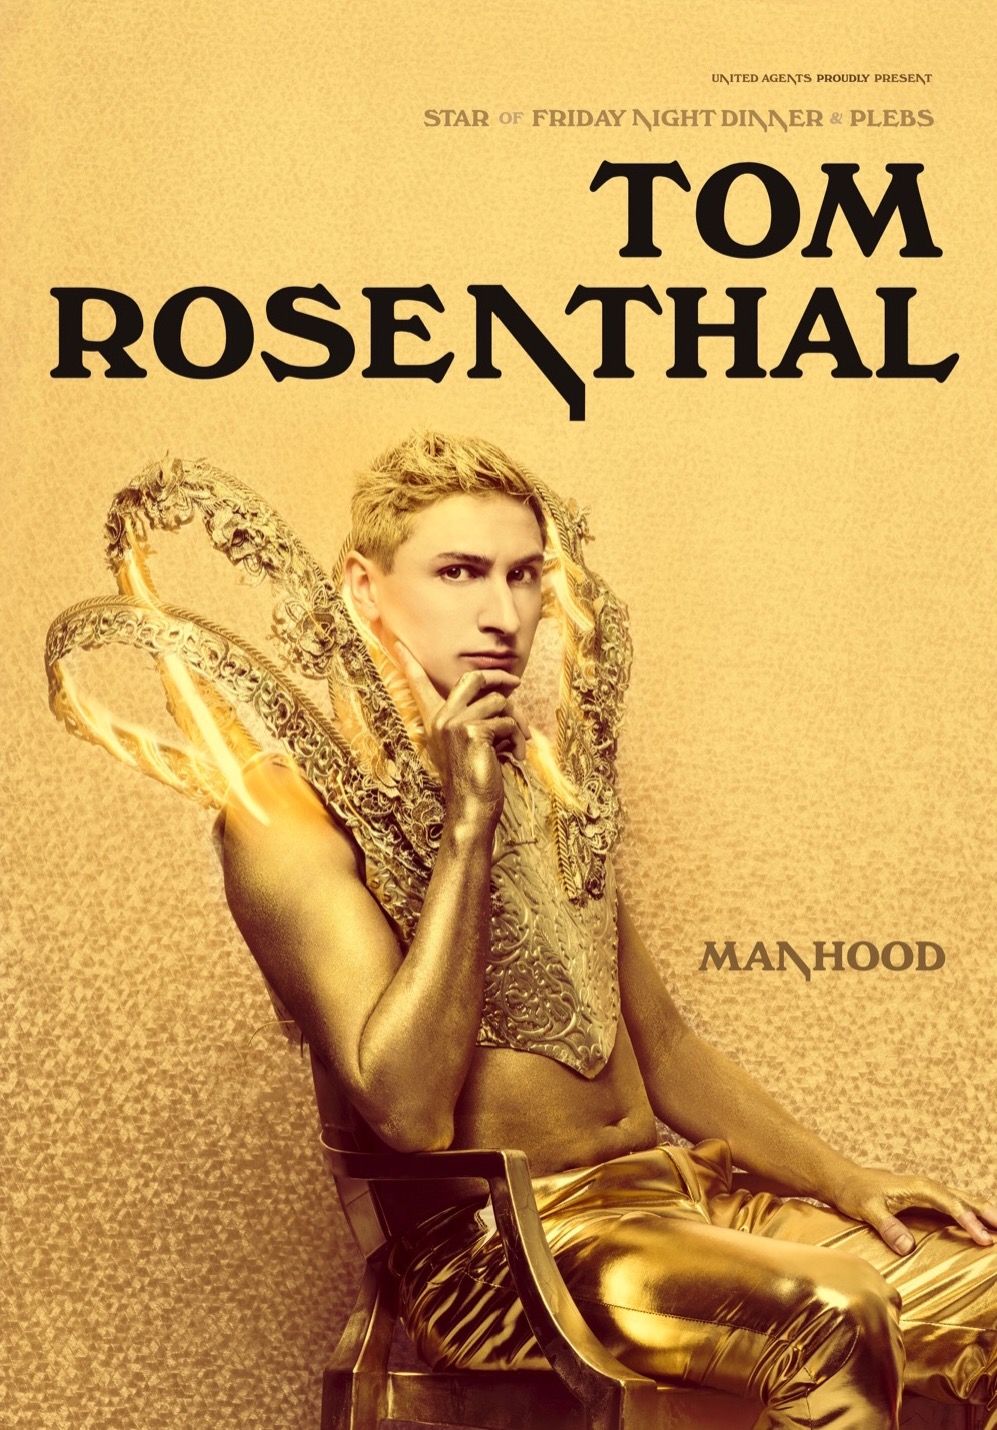 The poster for Tom Rosenthal: Manhood